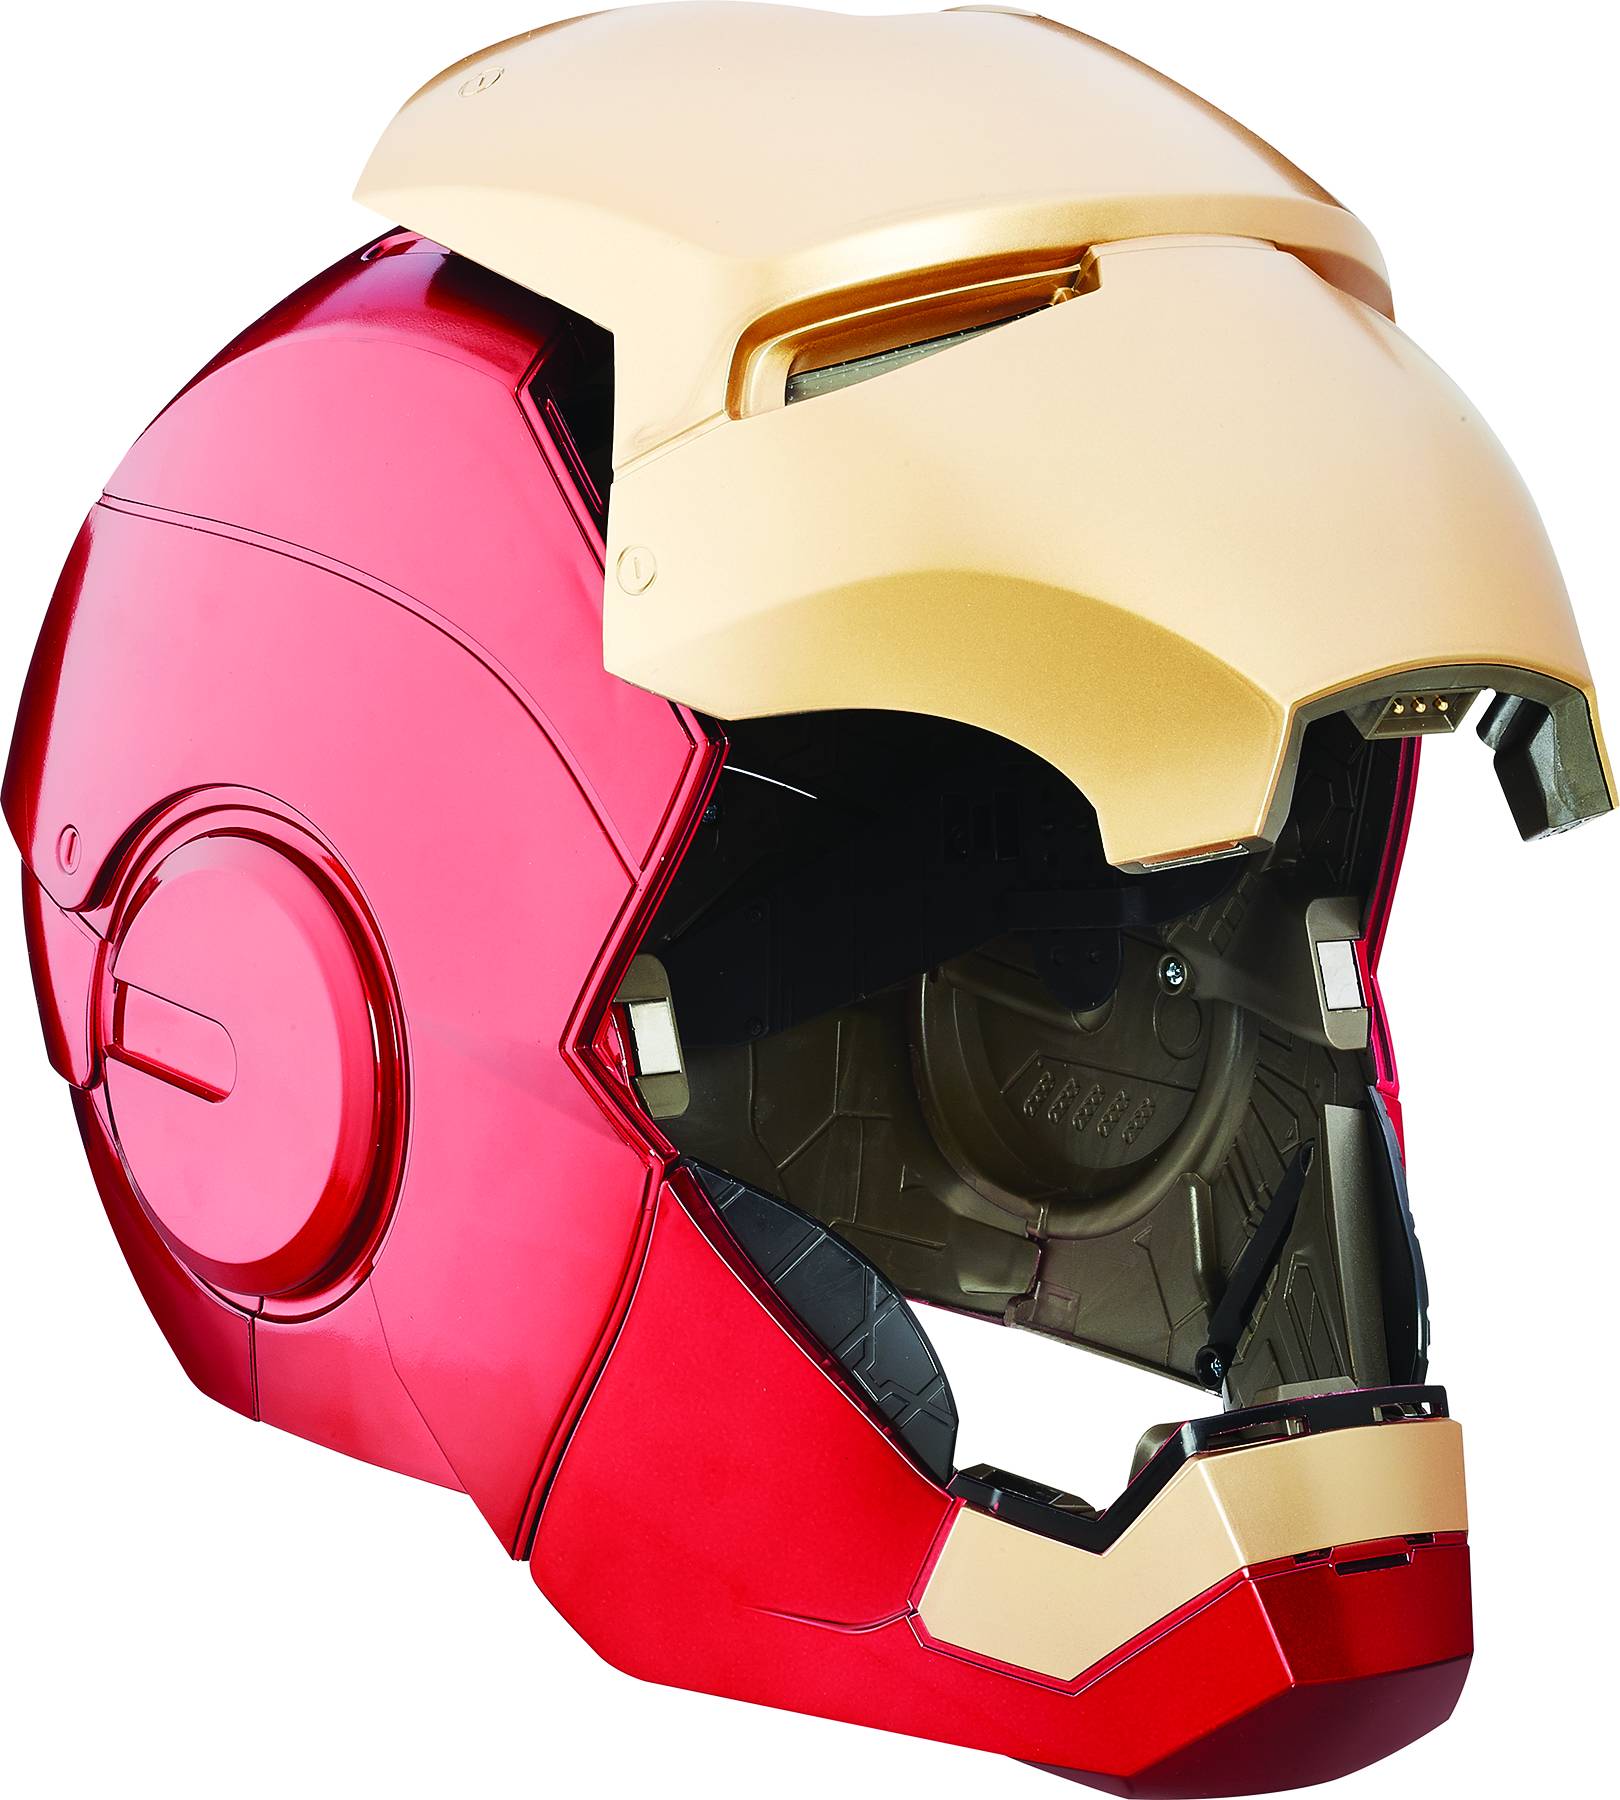 Avengers Legends Gear Iron Man Electronic Helmet